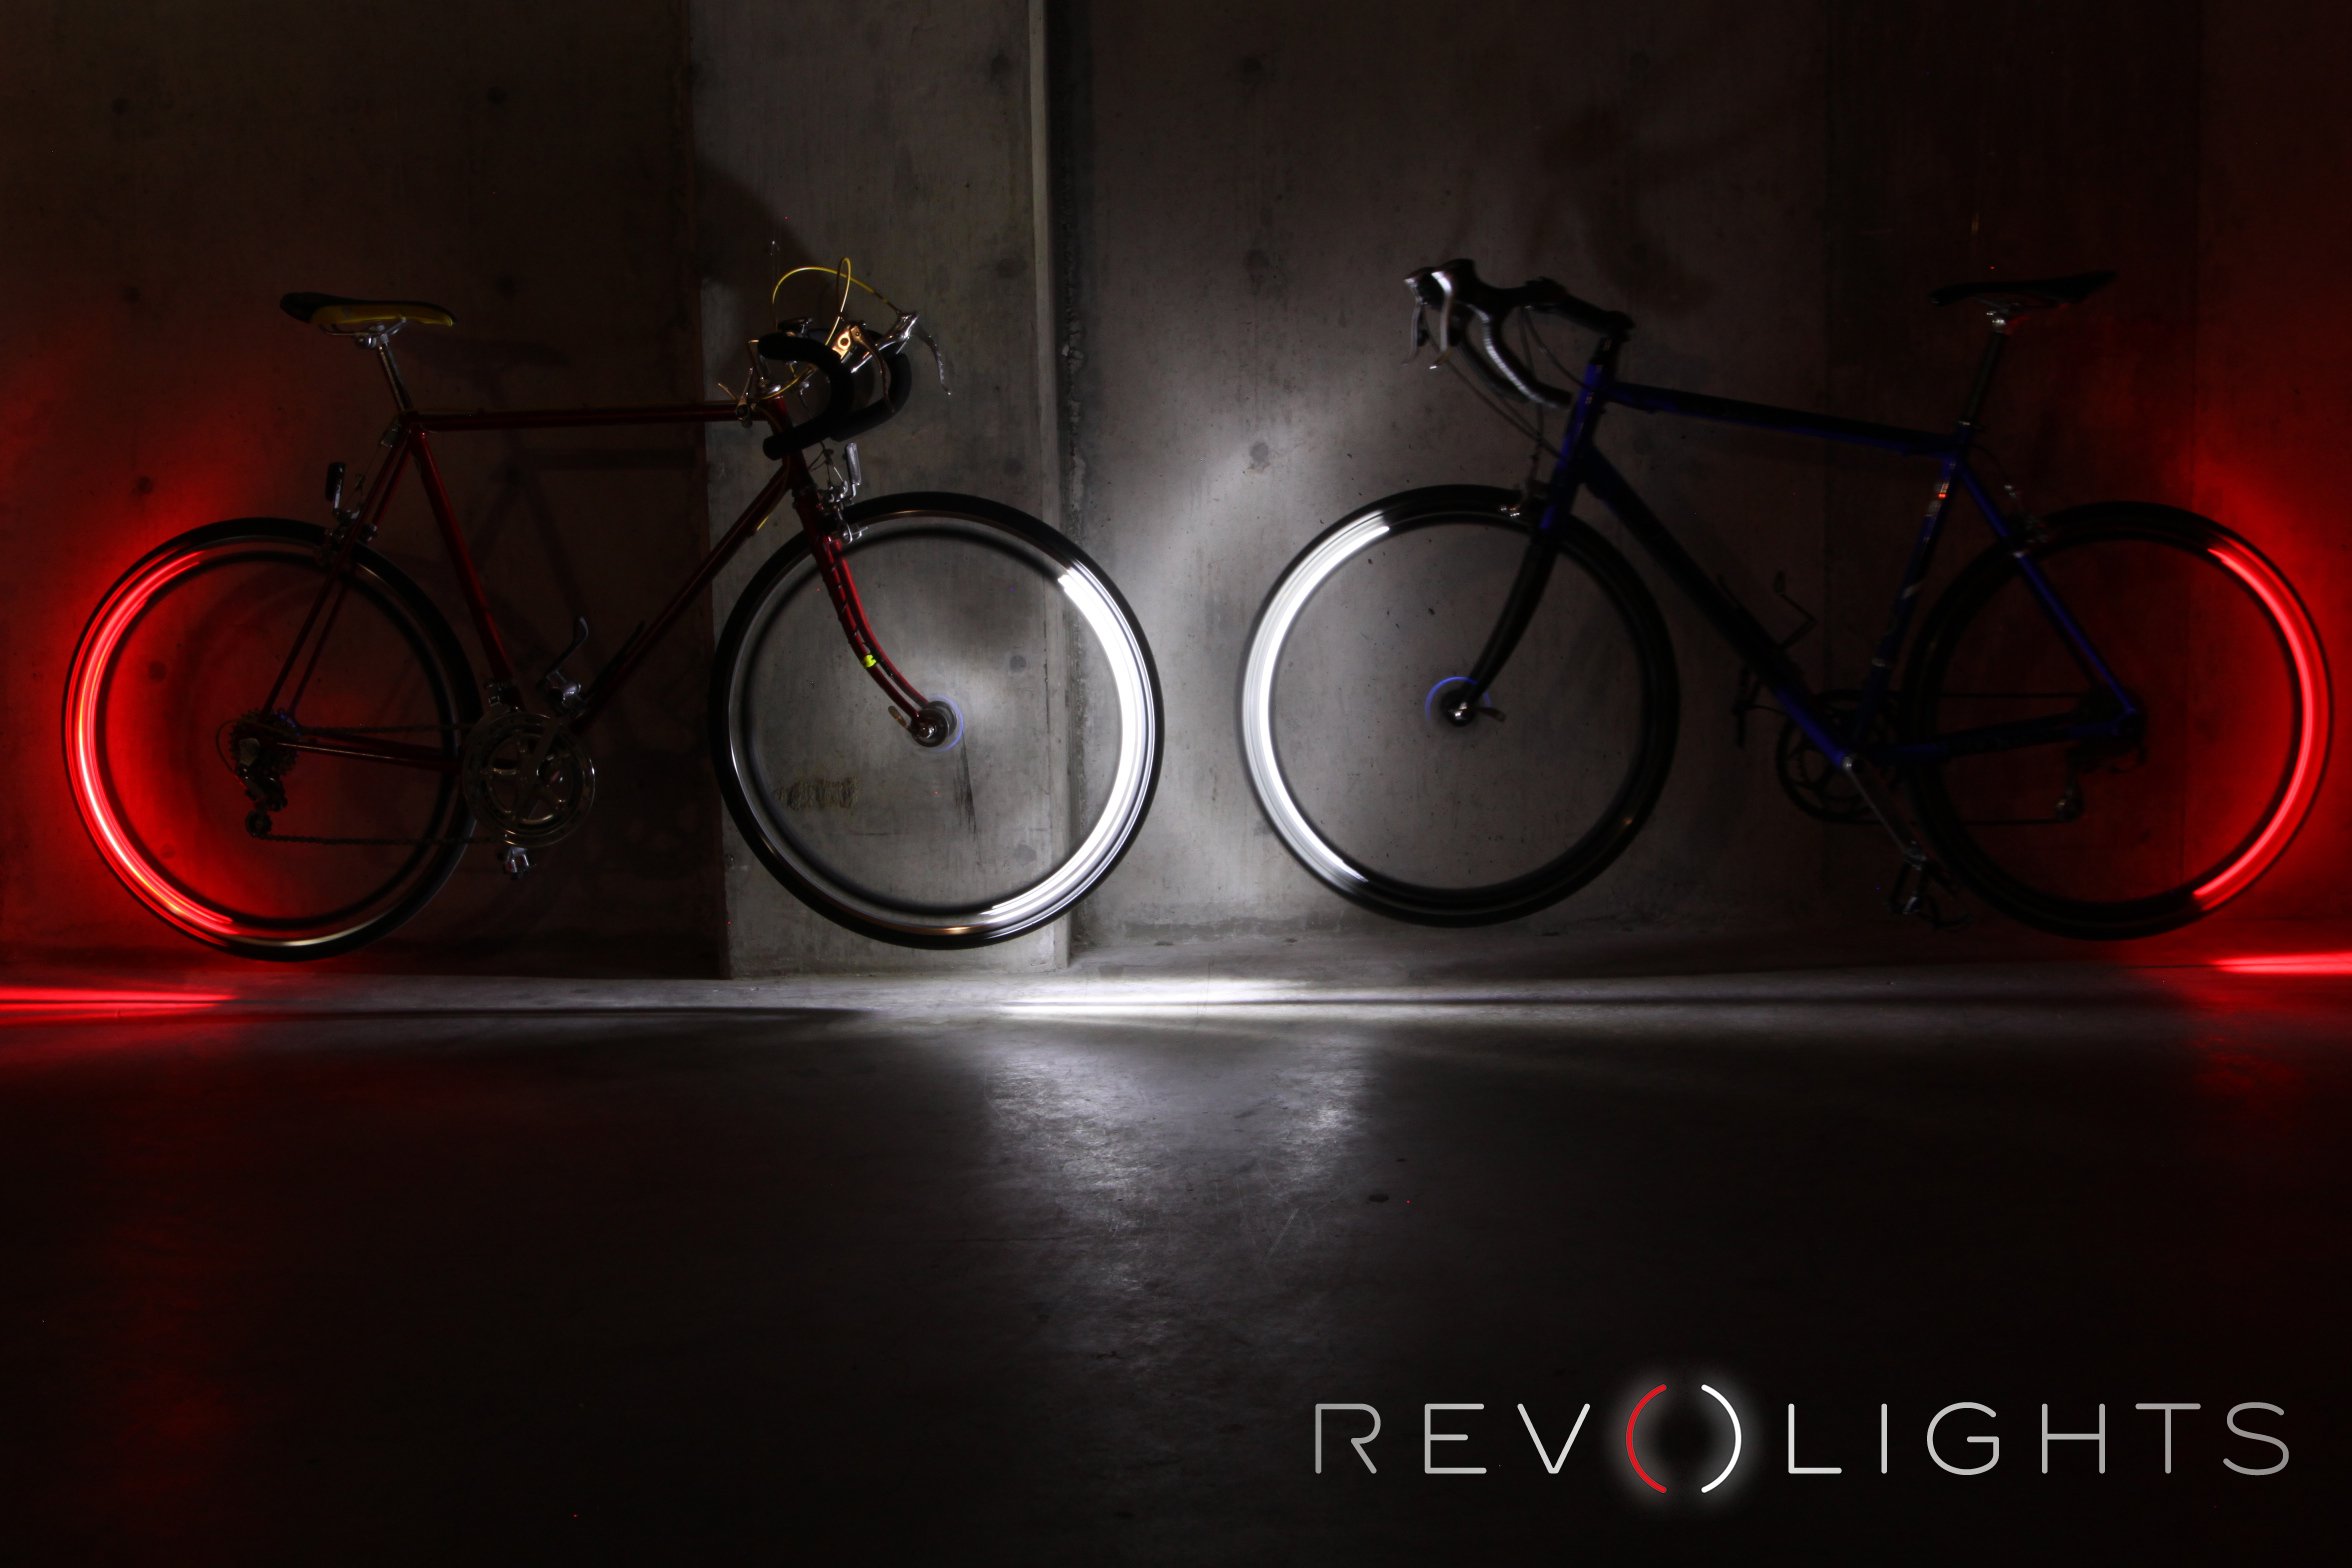 Auch eine auffällige Frontbeleuchtung ist denkbar, um Radfahrer nachts auffälliger zu machen.